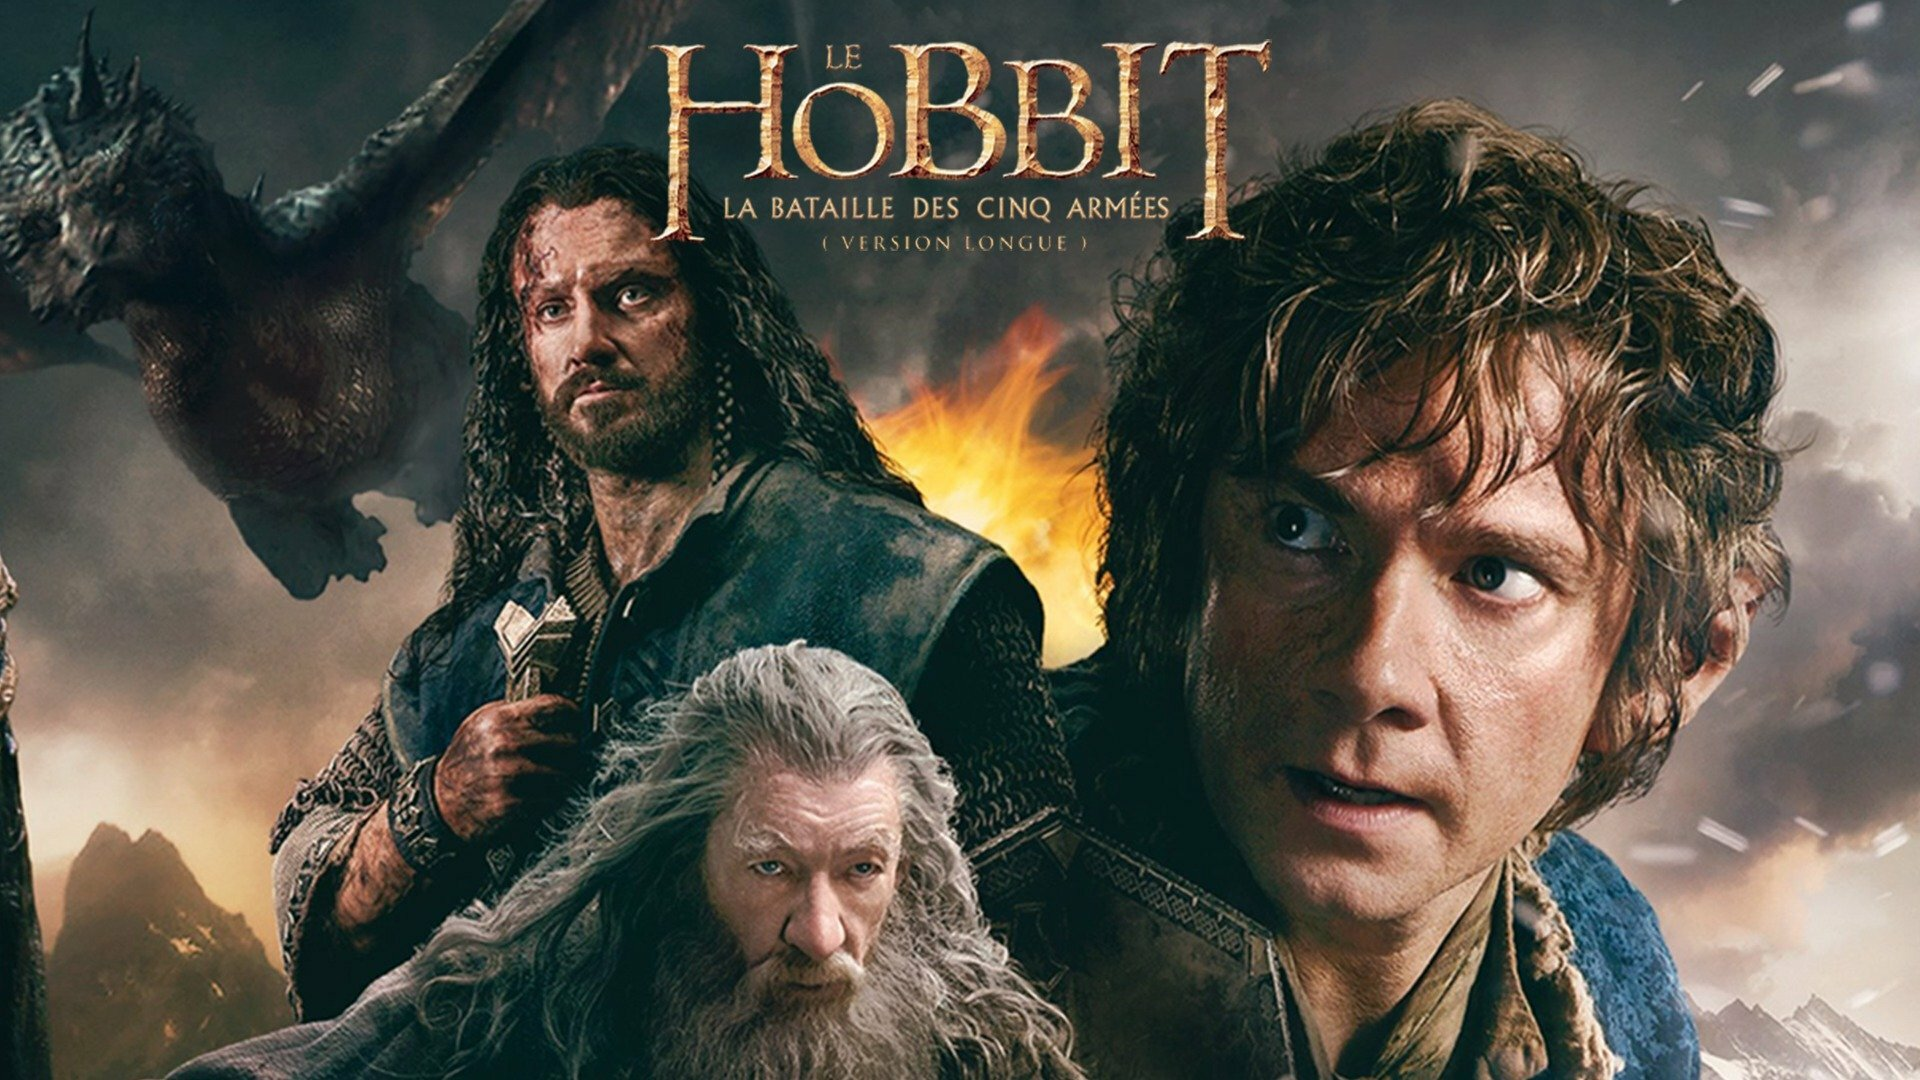 Le Hobbit: la bataille des cinq armées (version longue)